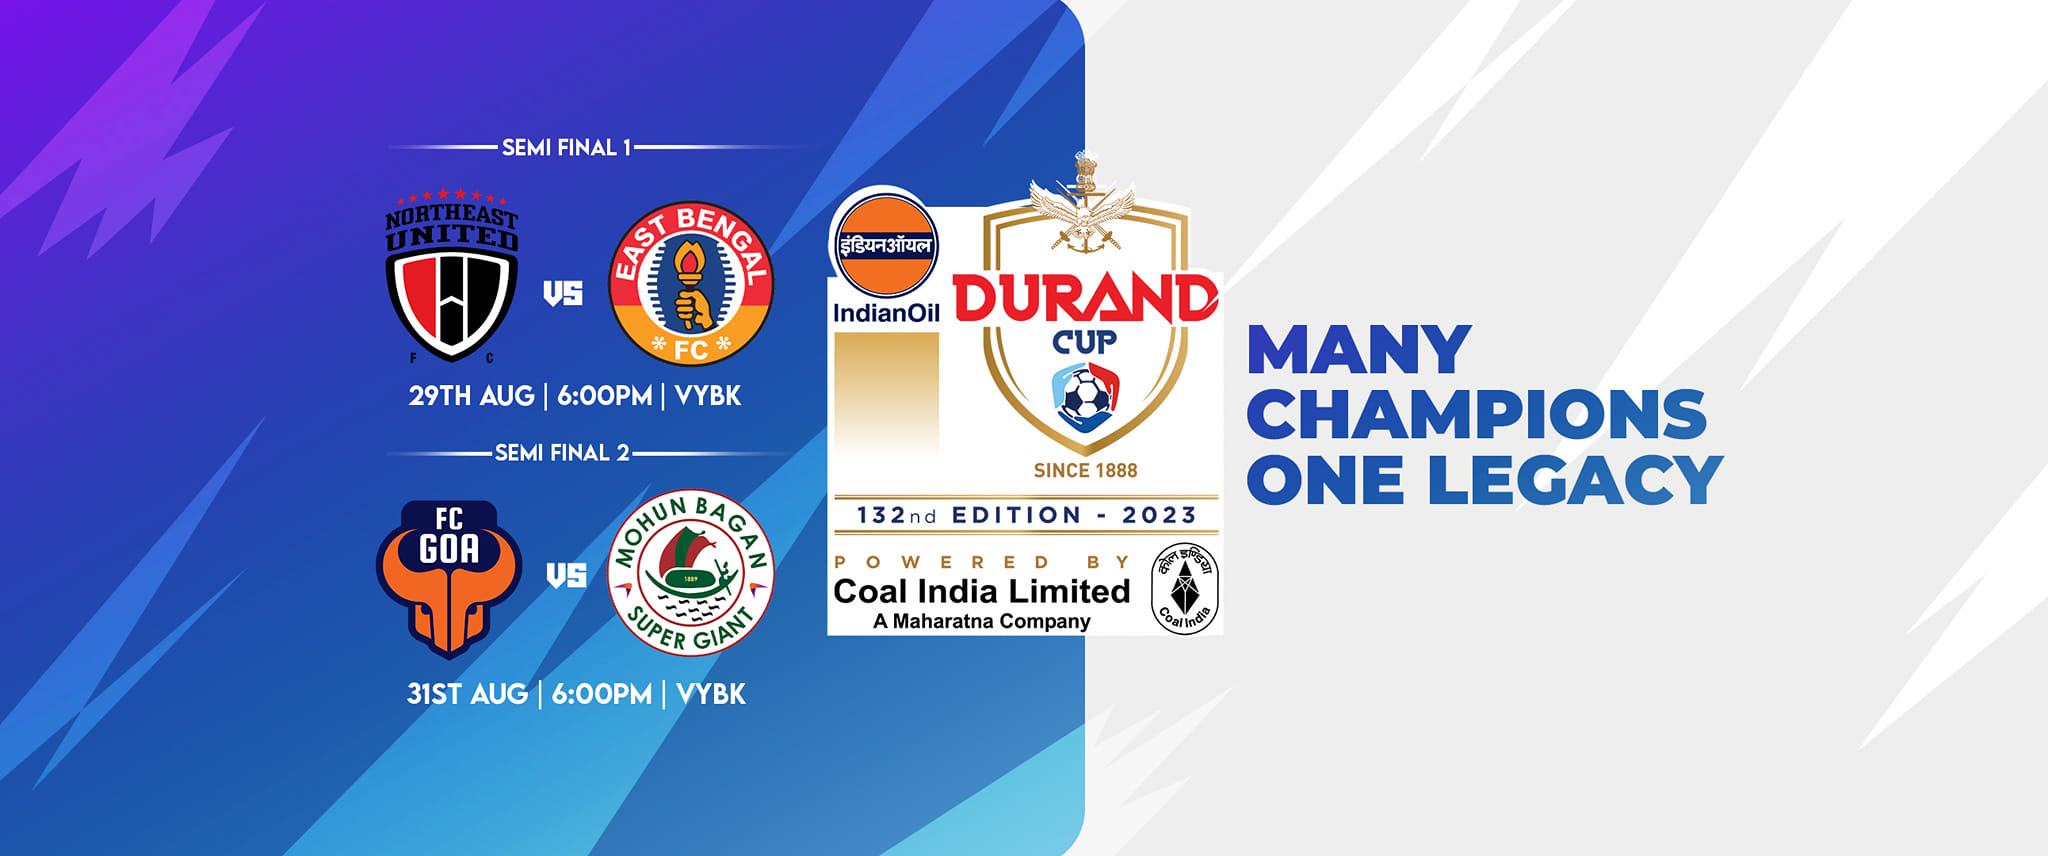 Durand Cup 2023-24 Semi-Finals
